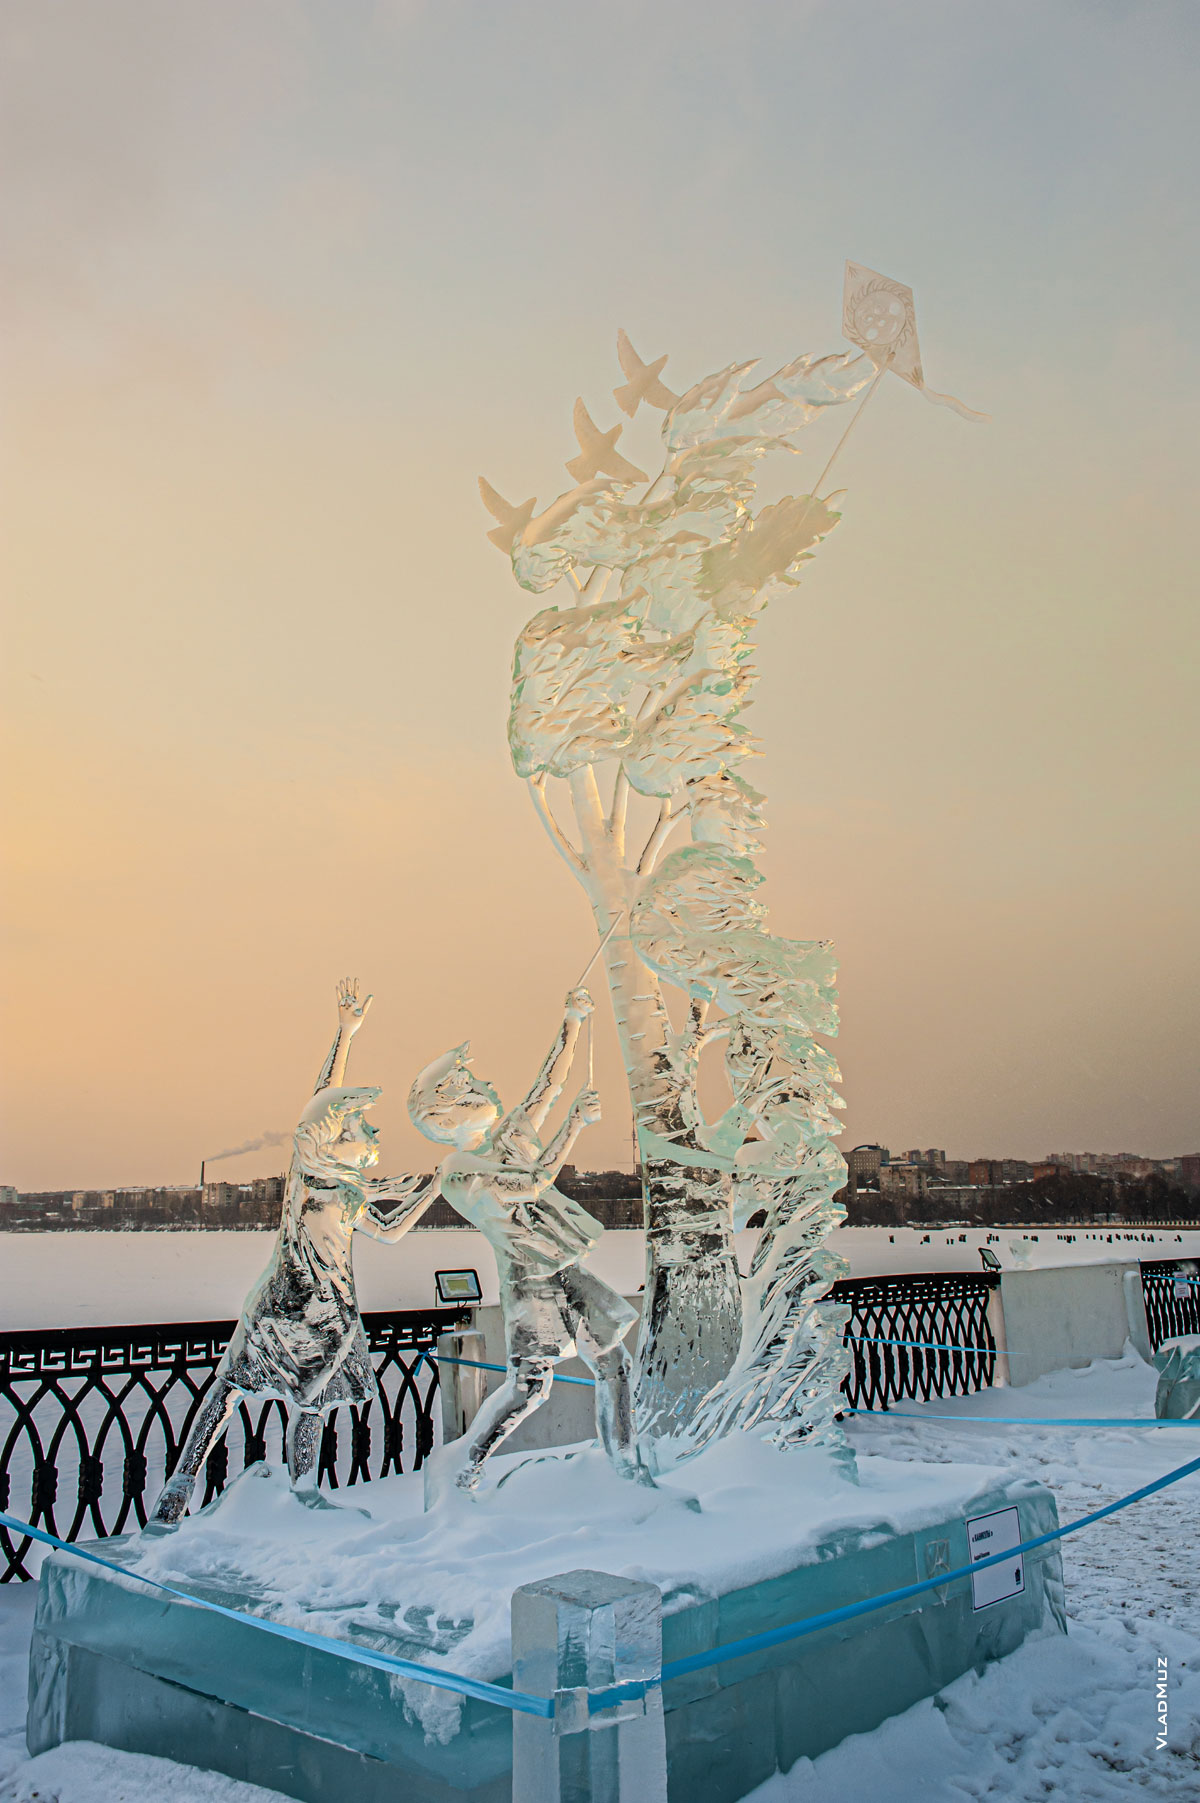 Ижевск, фестиваль «Удмуртский лед 2018»: фото ледовой скульптуры «Каникулы»